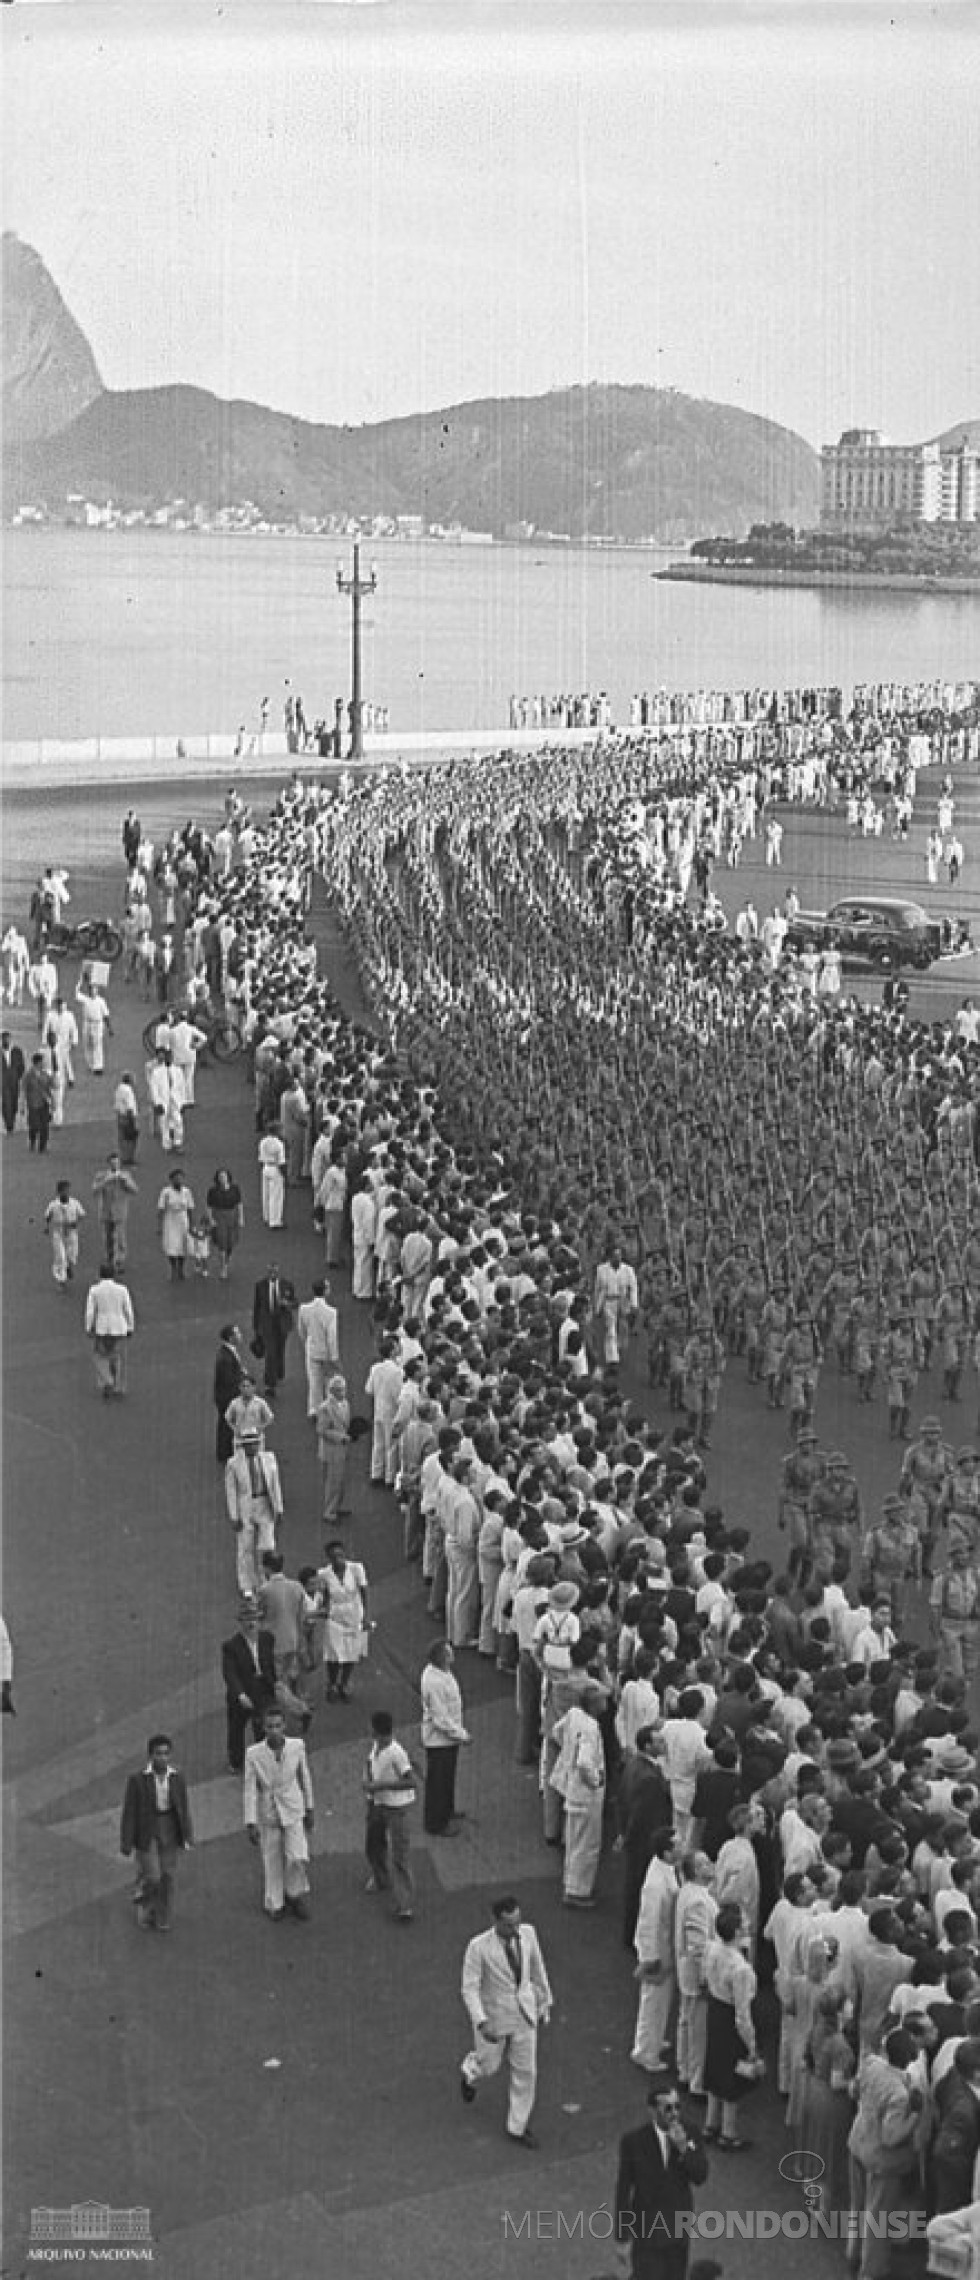 || Desfile da Força Expedicionária Brasileira (FEB),  na cidade do Rio de Janeiro, em 1944, antes de embarcar para os campos de batalha na Itália, na Segunda Guerra Mundial.
Imagem: Acervo Arquivo Nacional - FOTO 6  - 